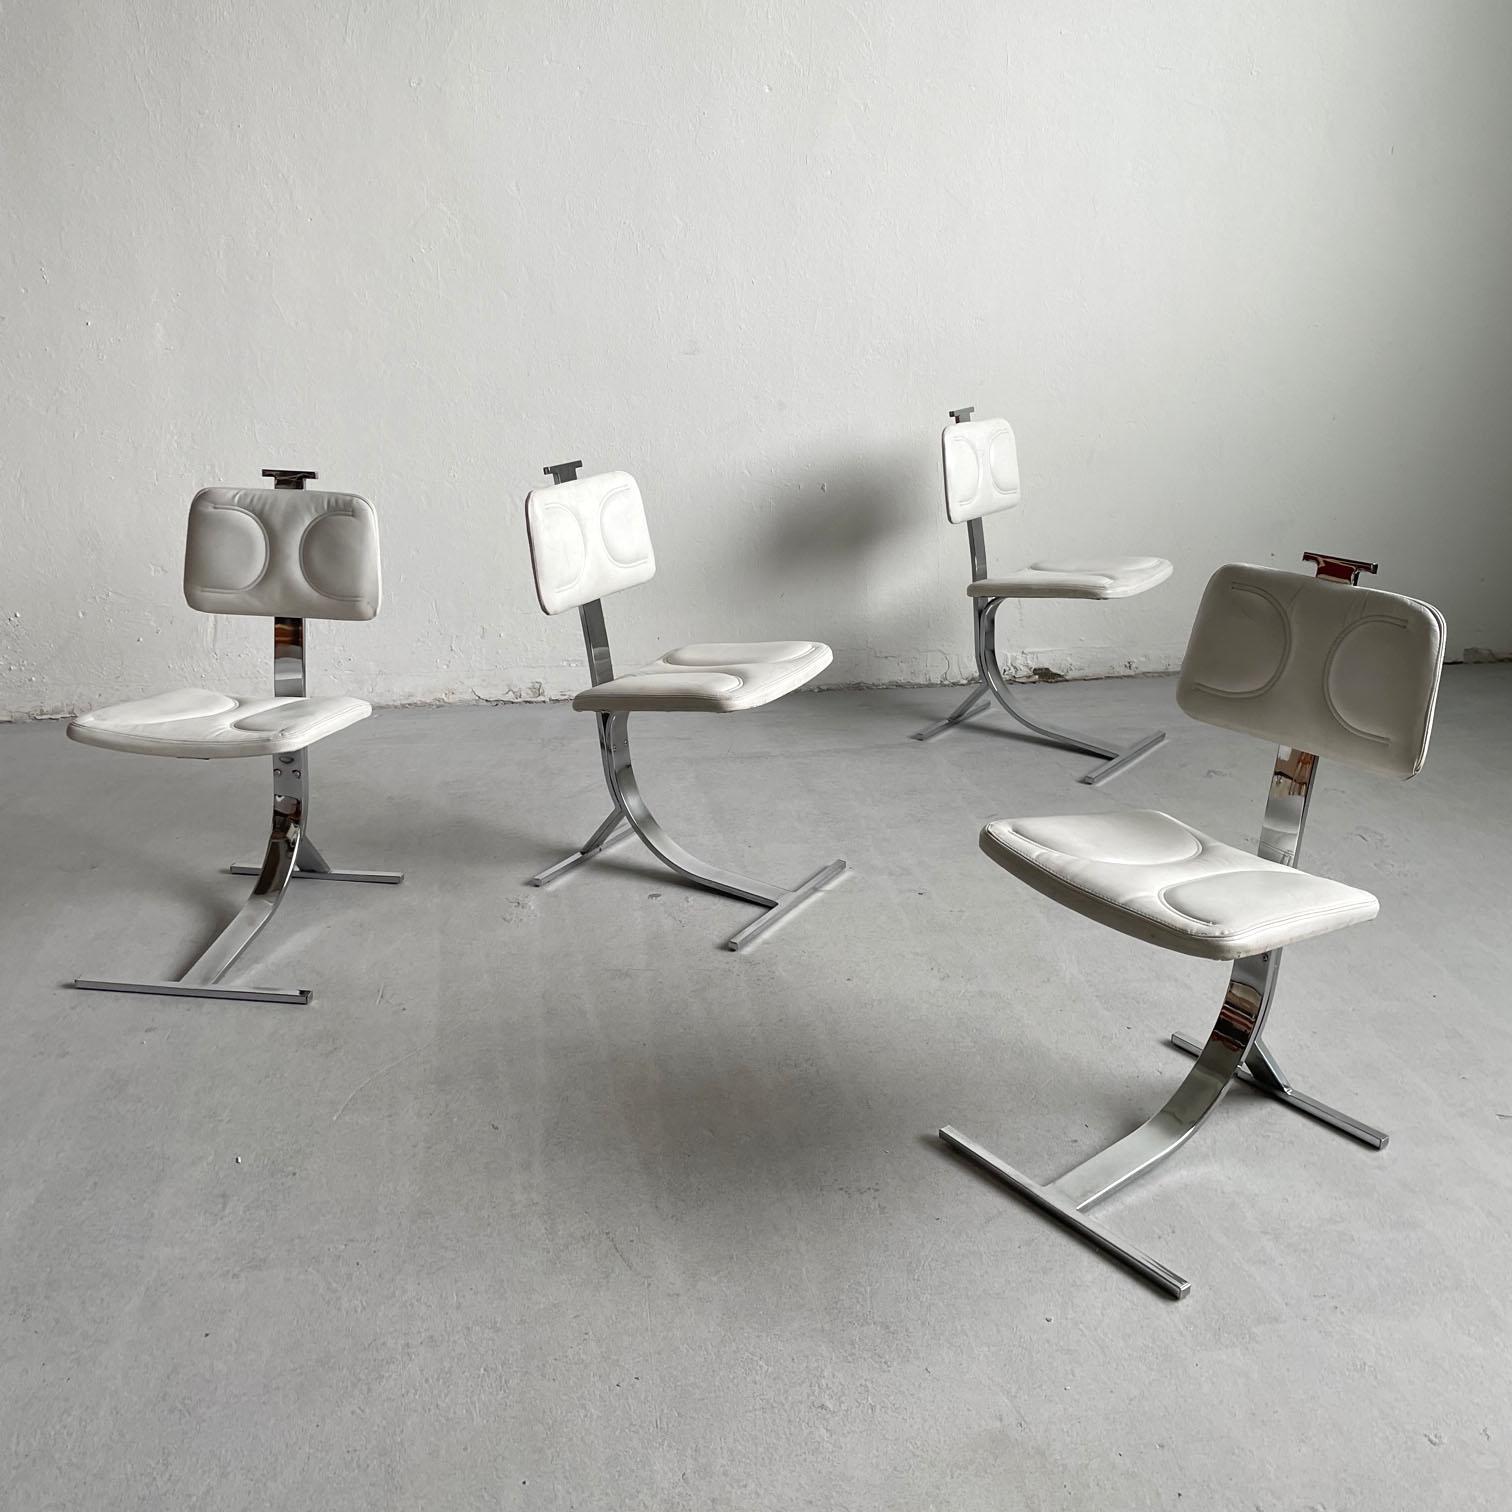 Satz von 4 atemberaubenden skulpturalen Esszimmerstühlen aus den 1970er Jahren

Die Stühle verfügen über ein sehr solides Gestell mit einer freitragenden, geschwungenen Form aus verzinktem Stahl.  Die Sitze und Rückenlehnen sind mit einem